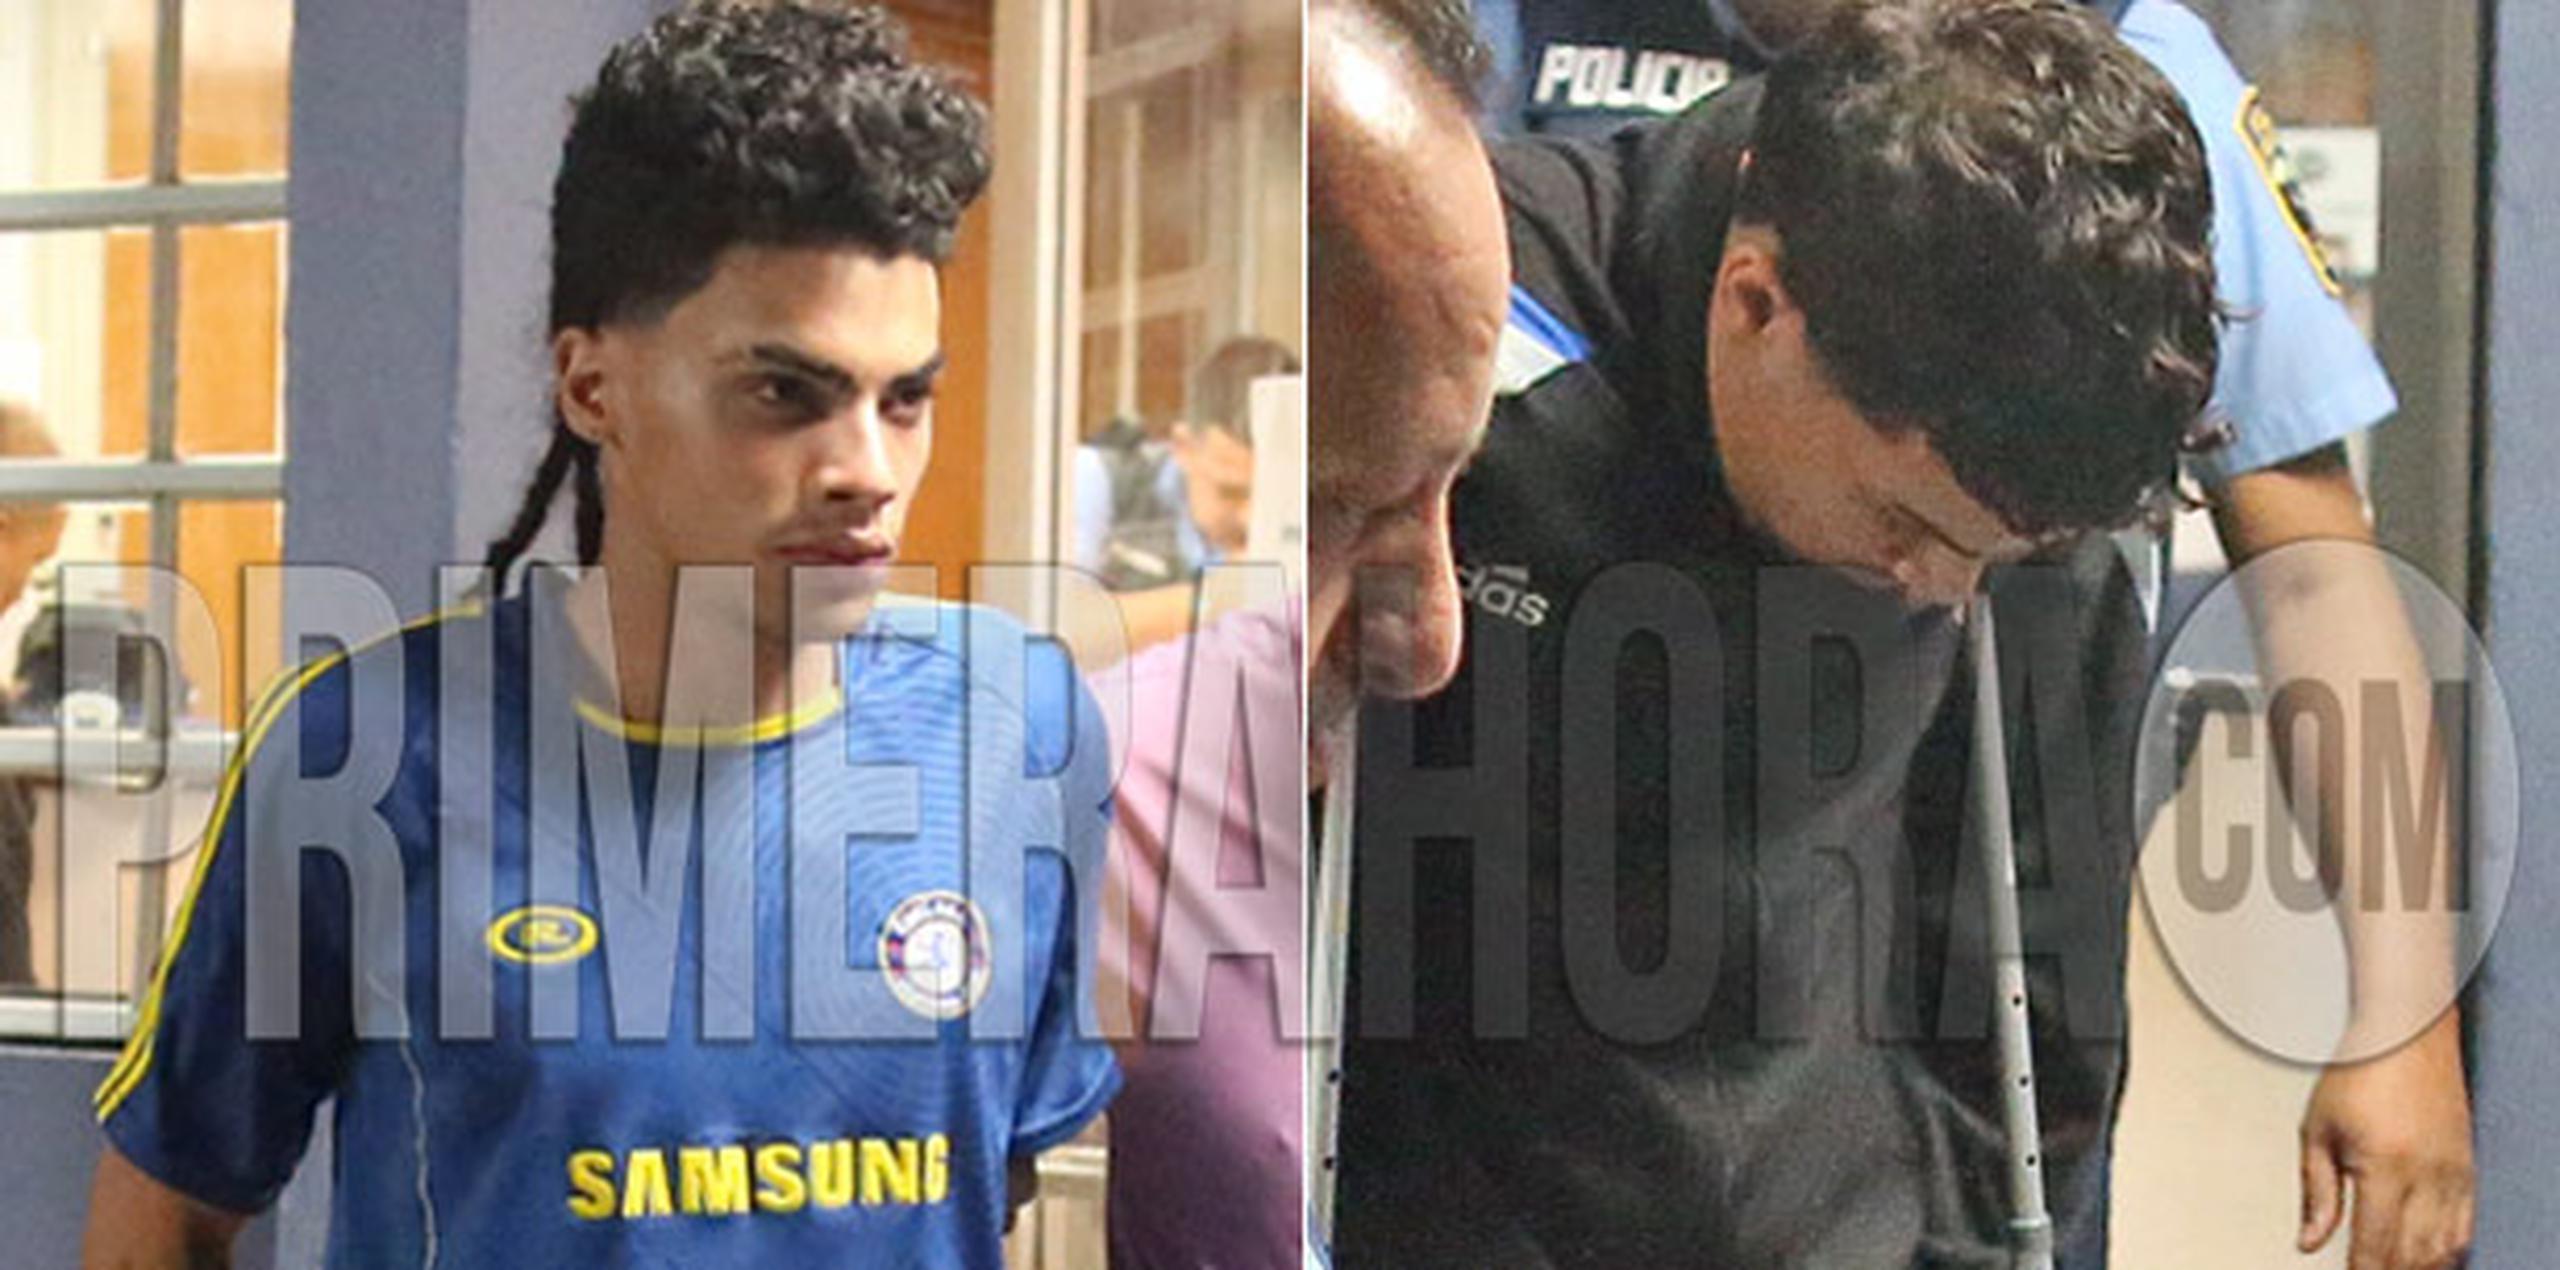 Los arrestos se realizaron entre Corozal y Naranjito entre las 6:30 p.m. y 7:00 p.m. (david.villafane@gfrmedia.com)